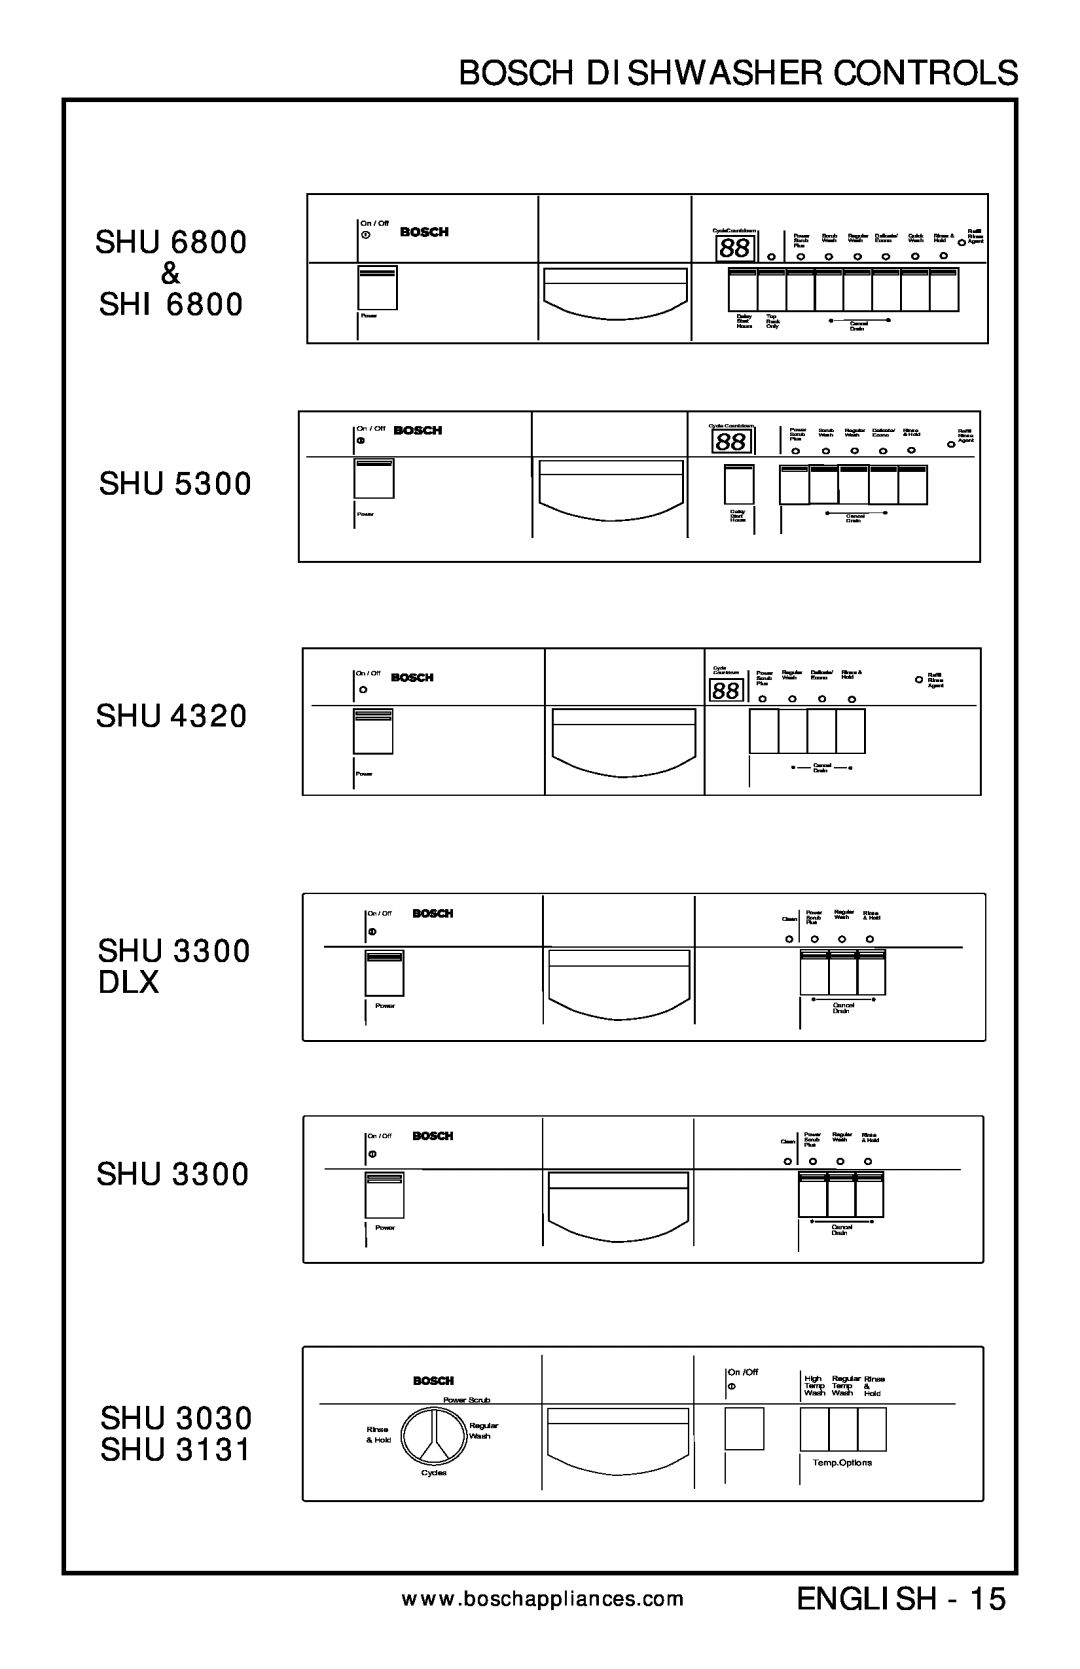 Bosch Appliances SHV 4300, SHV 6800, SHV 4800, SHU 5300 SHI SHU SHU SHU 3300 DLX SHU SHU 3030 SHU, Bosch Dishwasher Controls 